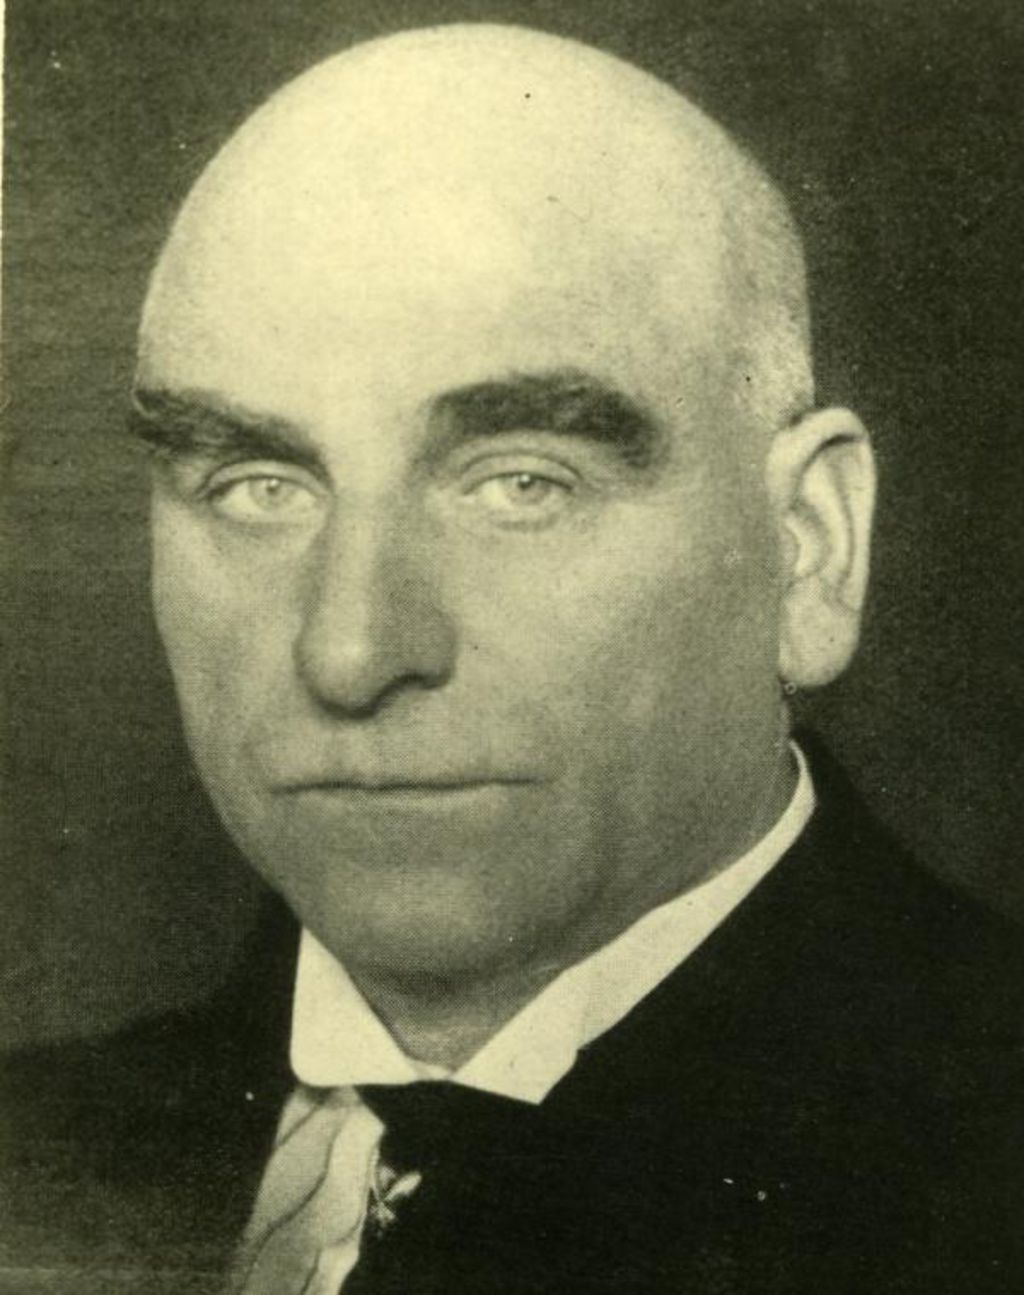 Foto: Otto Braun, um 1930